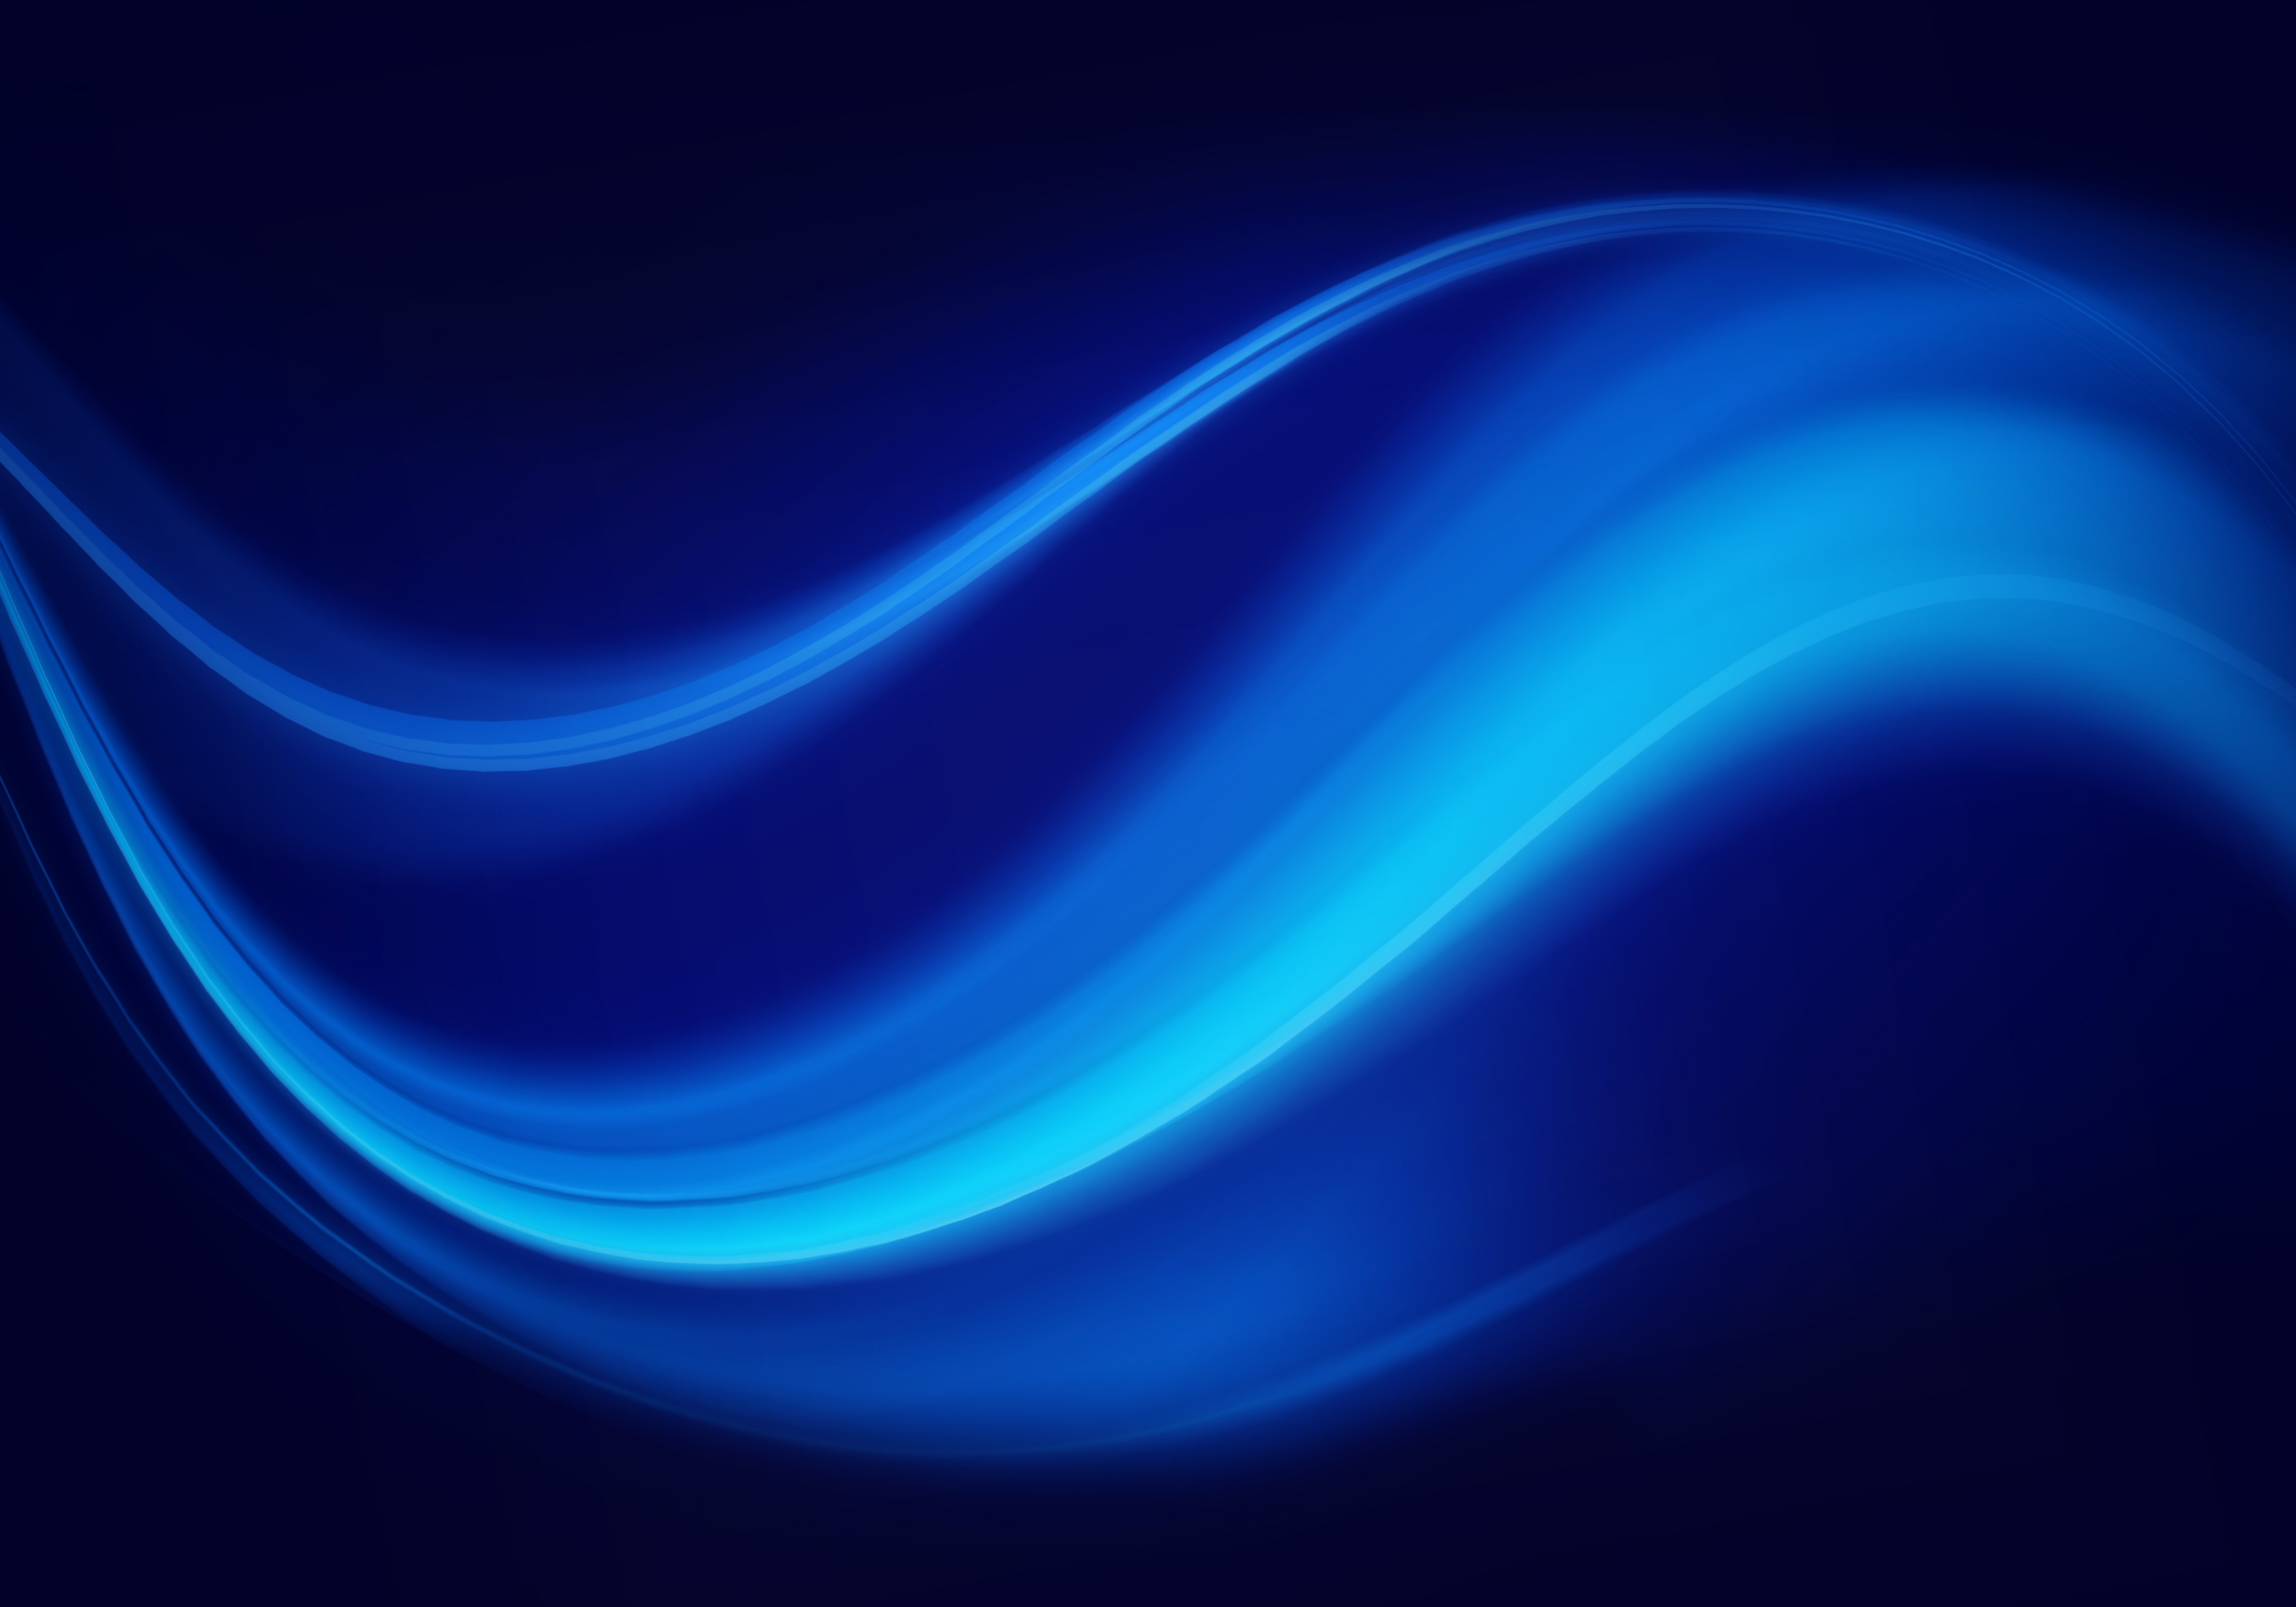 Dark blue swirl abstract texture background